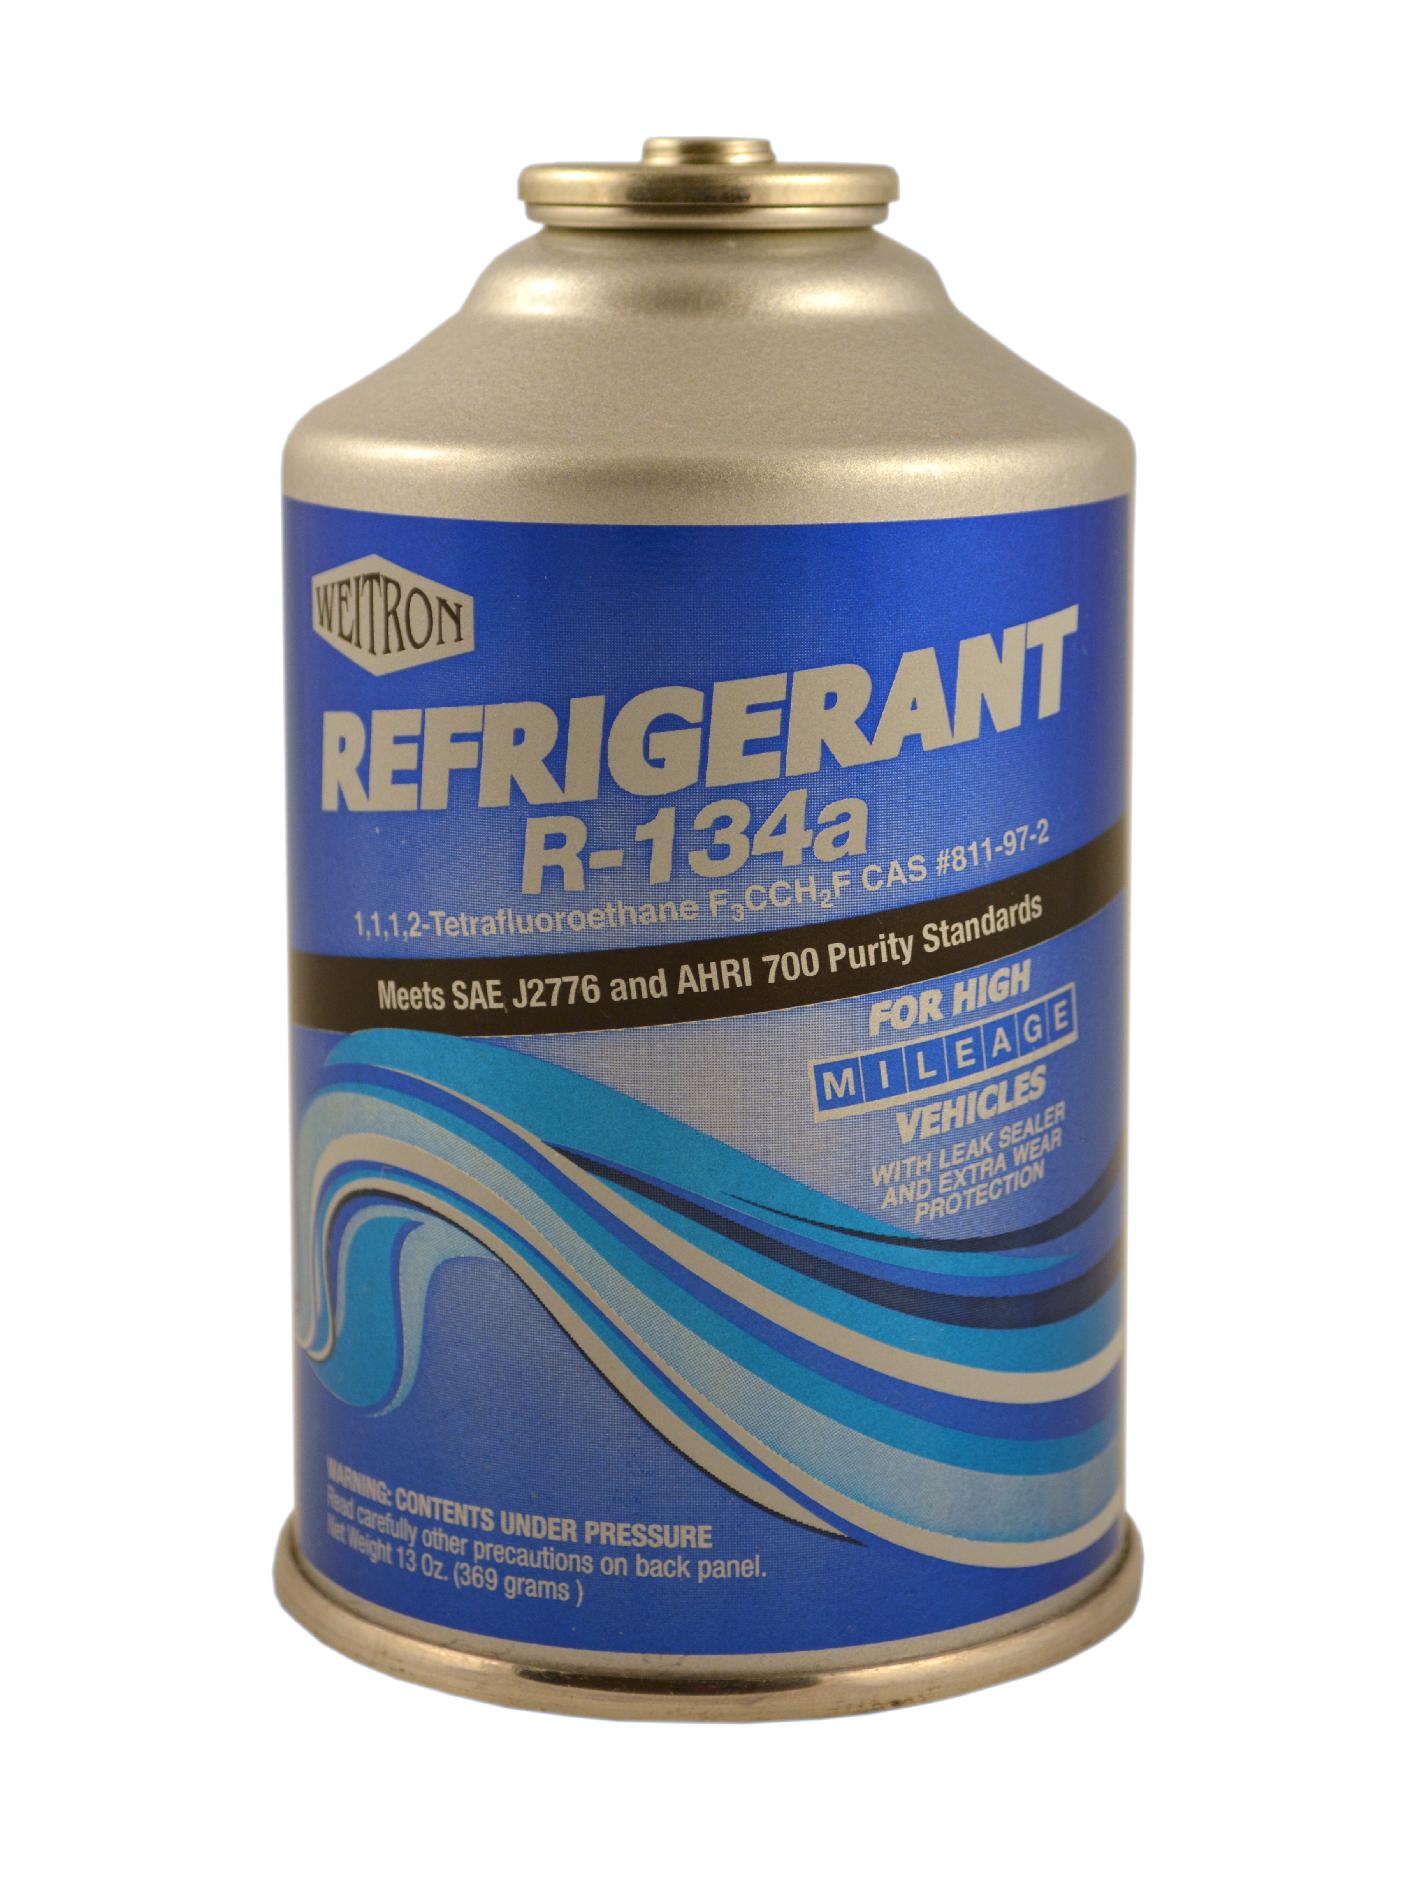 Weitron 12 oz High Mileage R134A Refrigerant